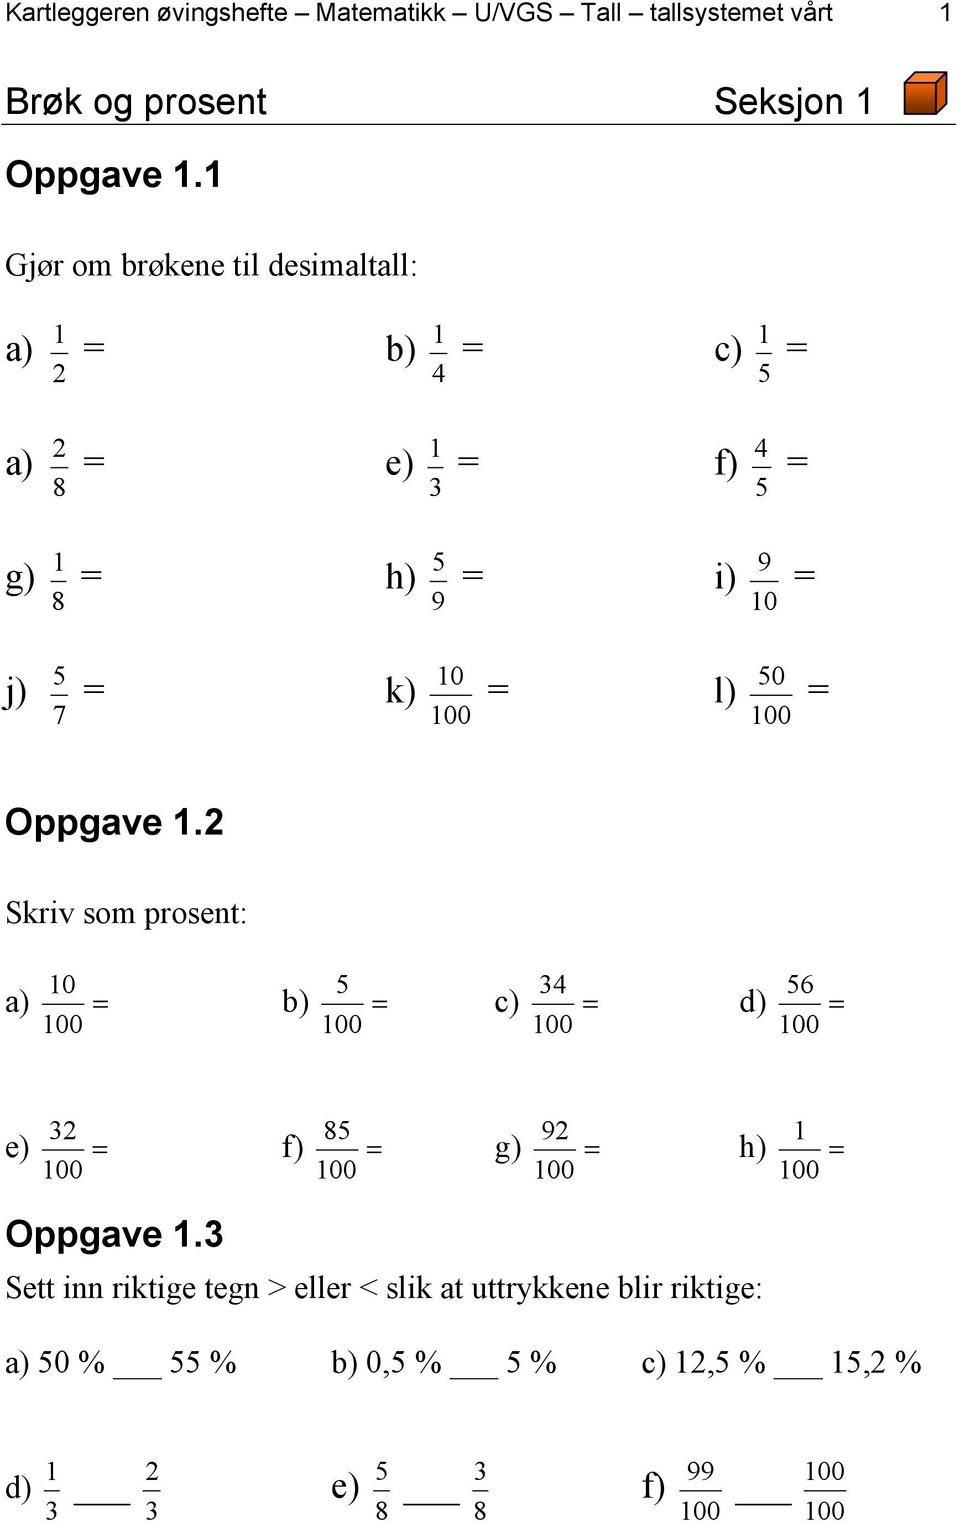 0 = l) 0 = 7 Oppgave.2 Skriv som prosent: 0 a) = b) = 4 c) = 6 d) = 2 e) = 8 f) = 92 g) = h) = Oppgave.